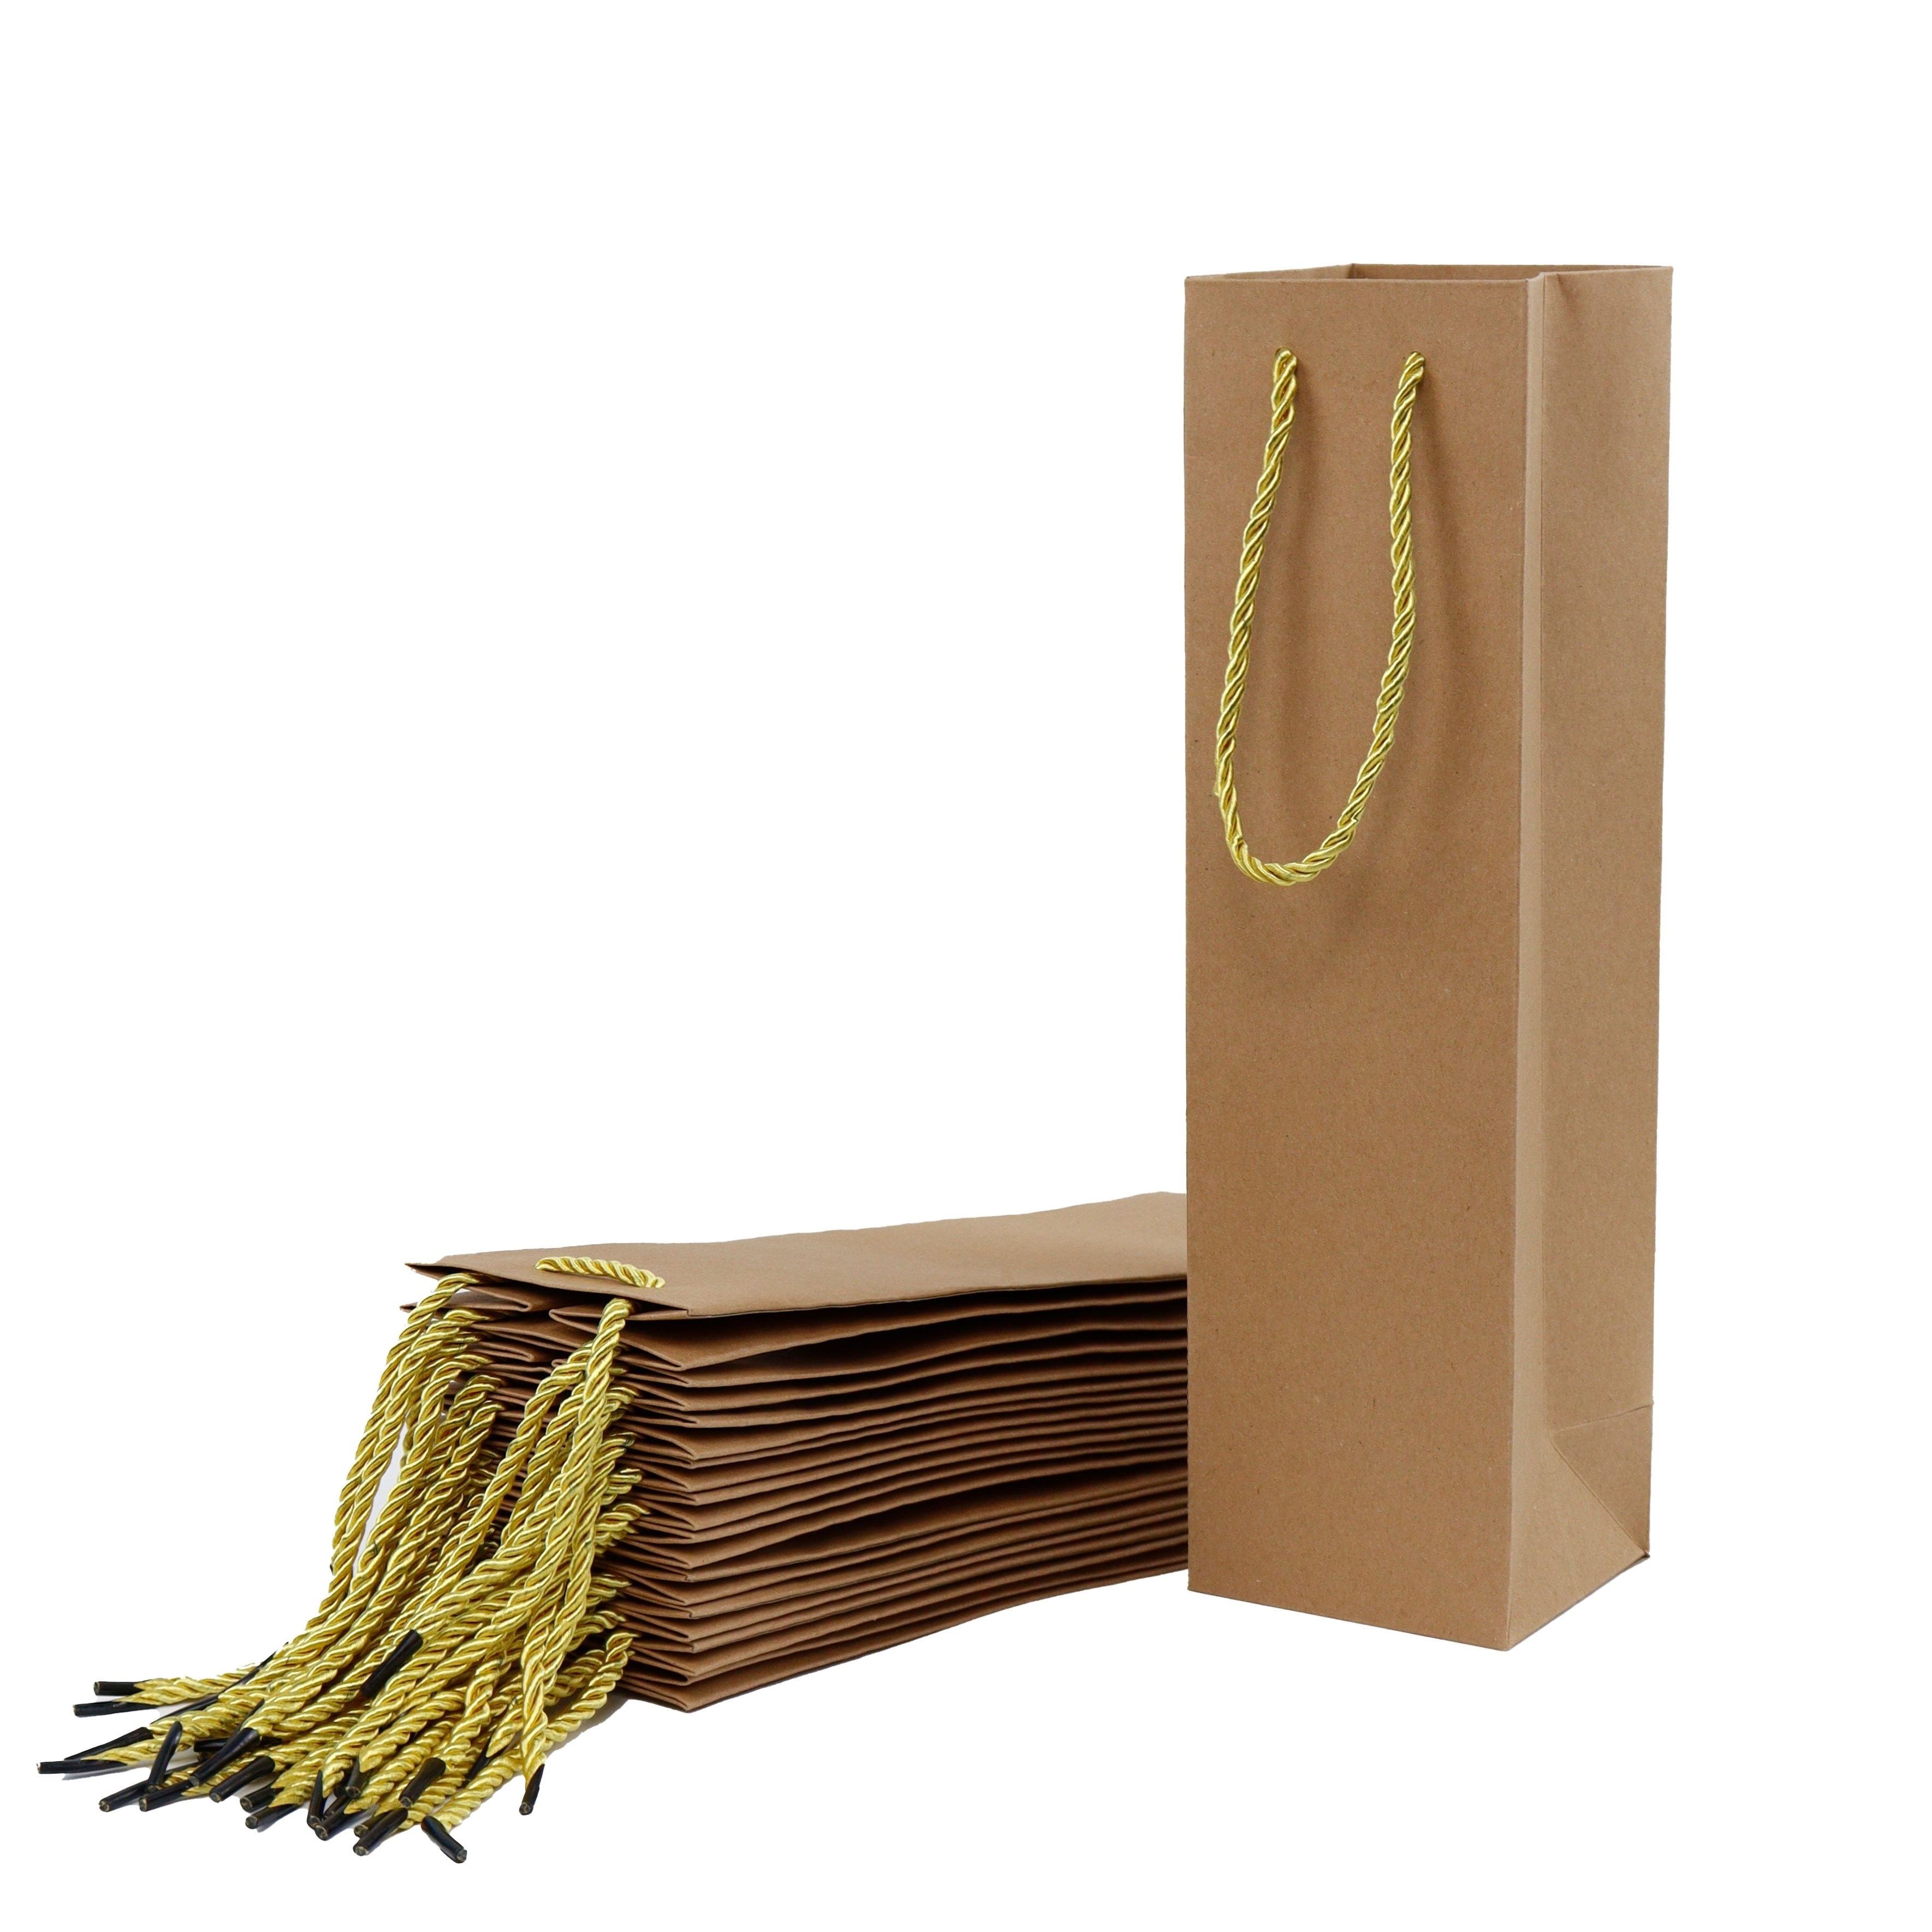 Bolsas de regalo de agradecimiento – Paquete de 12 elegantes bolsas de  papel con letras impresas en papel de aluminio dorado – perfectas para  fiestas